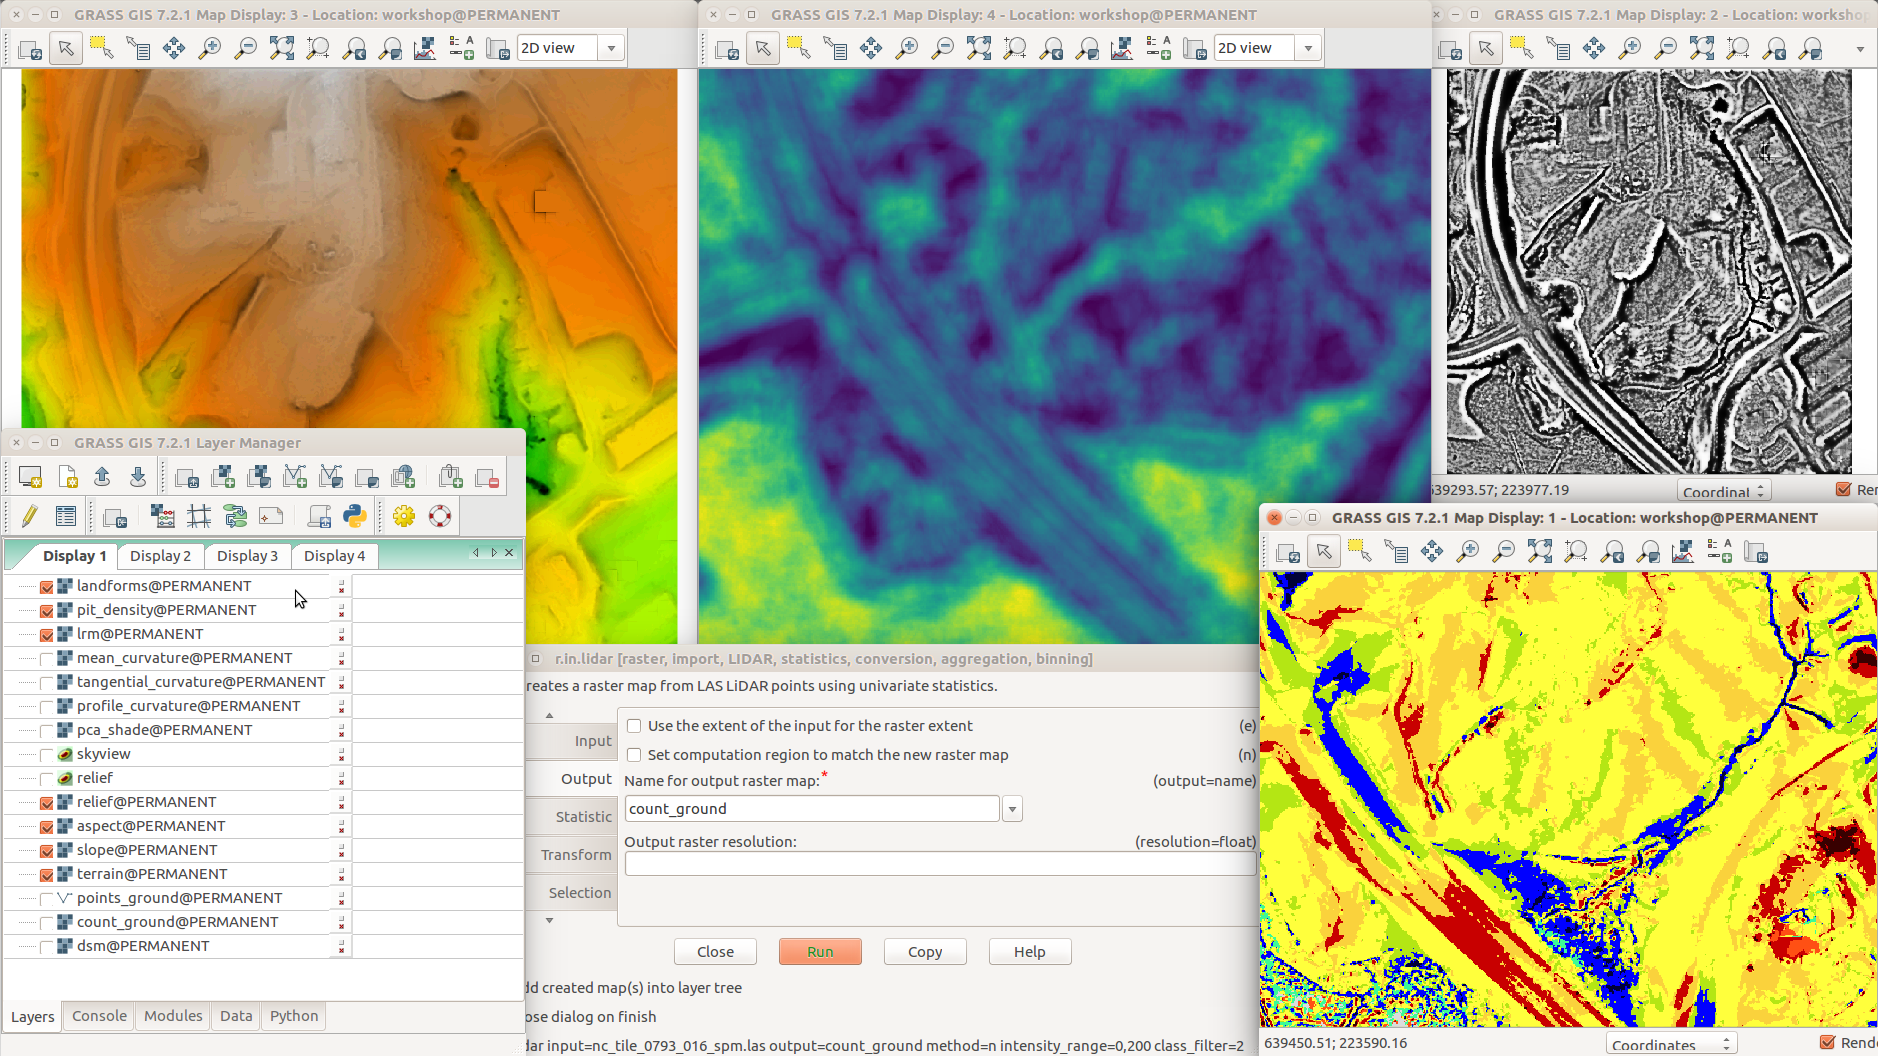 Diferentes análisis de terreno y visualizaciones en múltiples Visualizadores de mapas